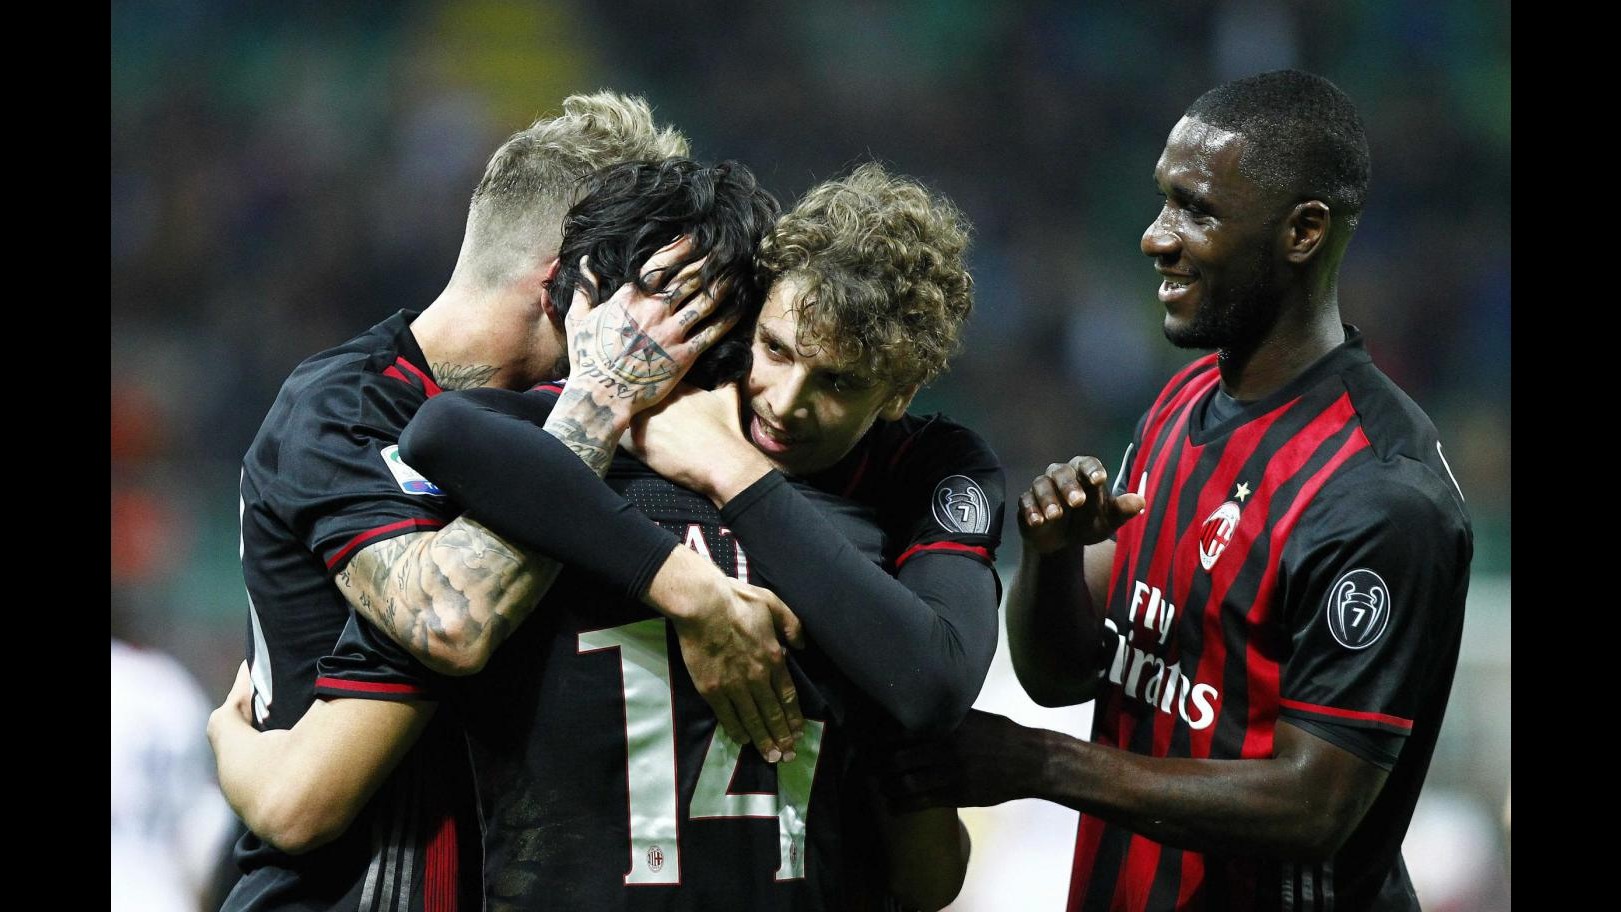 FOTO Serie A, il Milan supera il Genoa 1-0: decide Mati